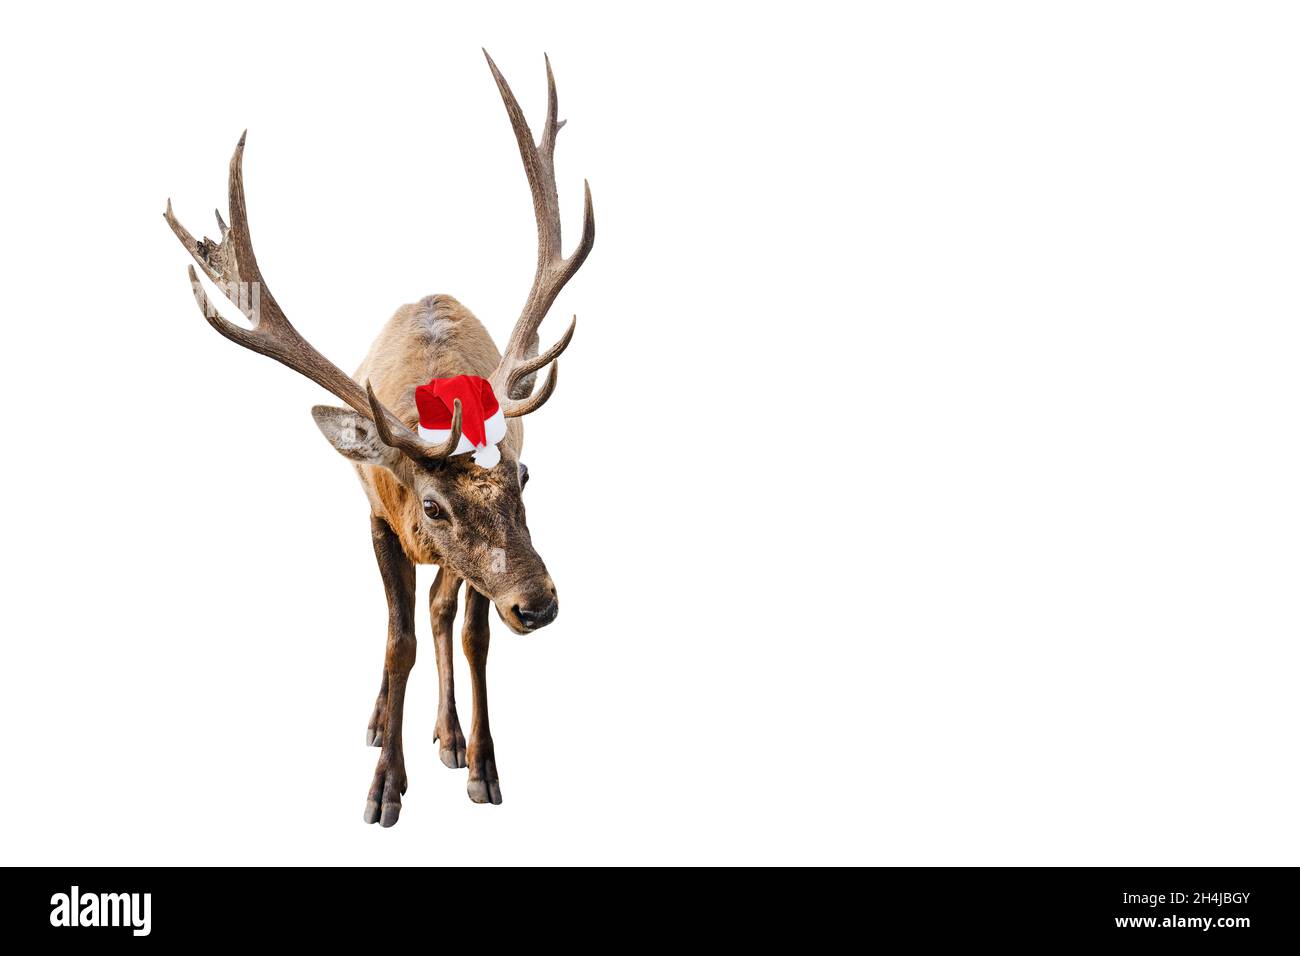 Divertente cervo rosso con corna enormi a Natale o Santa cappello isolato su sfondo bianco. Il cervo è il nuovo simbolo dell'anno. Banner con spazio di copia Foto Stock